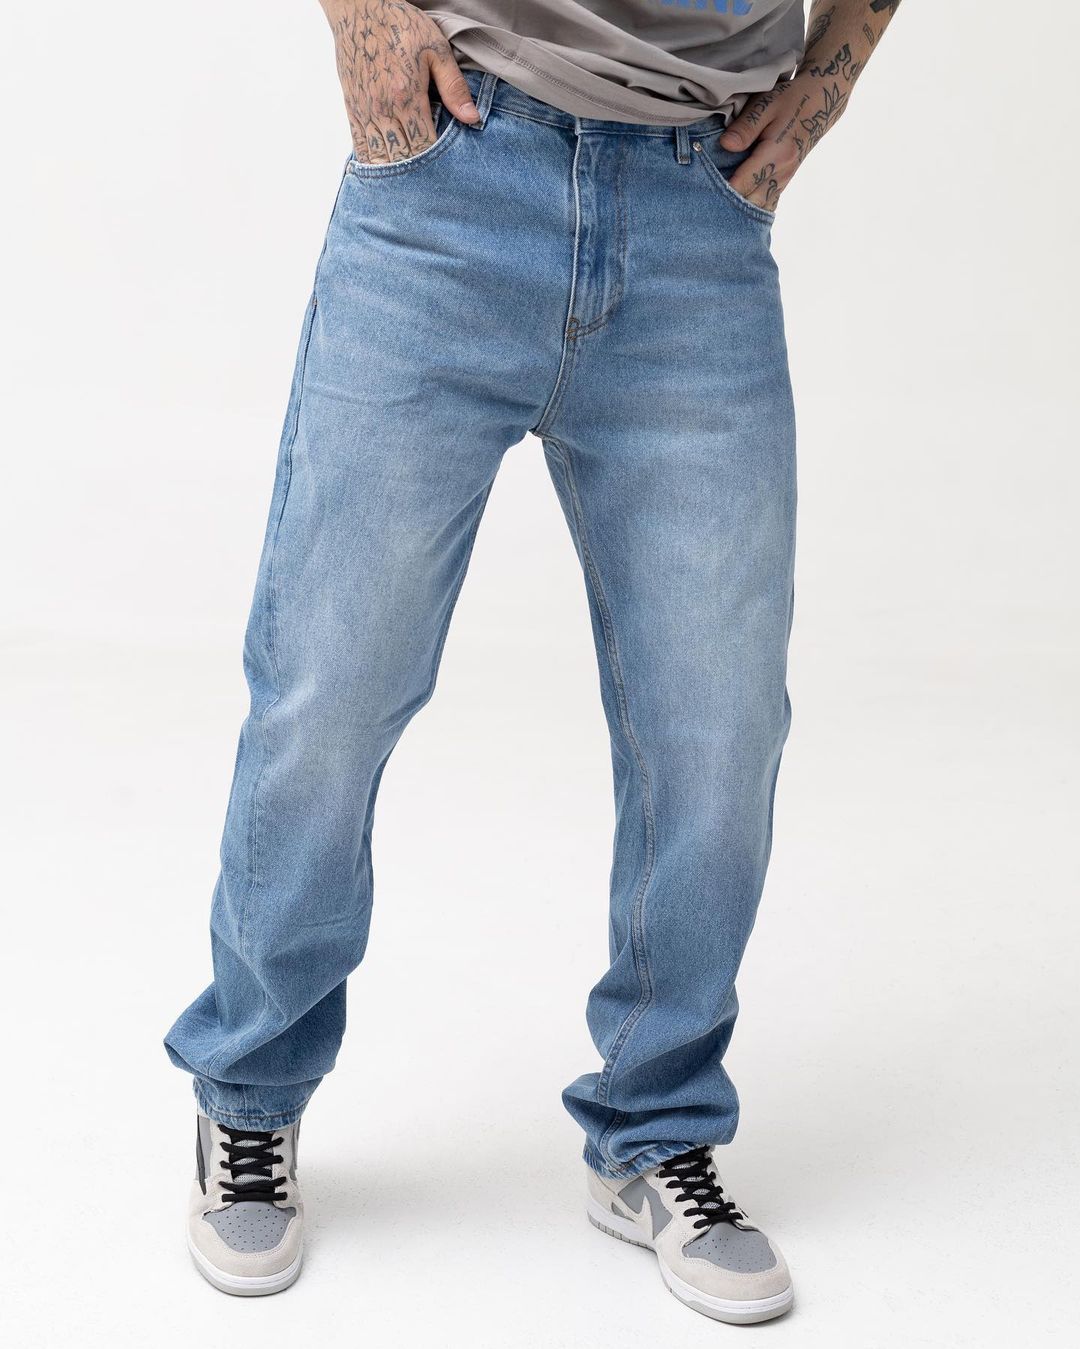 Мужские рубашки базовые модели купить в интернет-магазине Olymp. Продажа мужских сорочек оптом